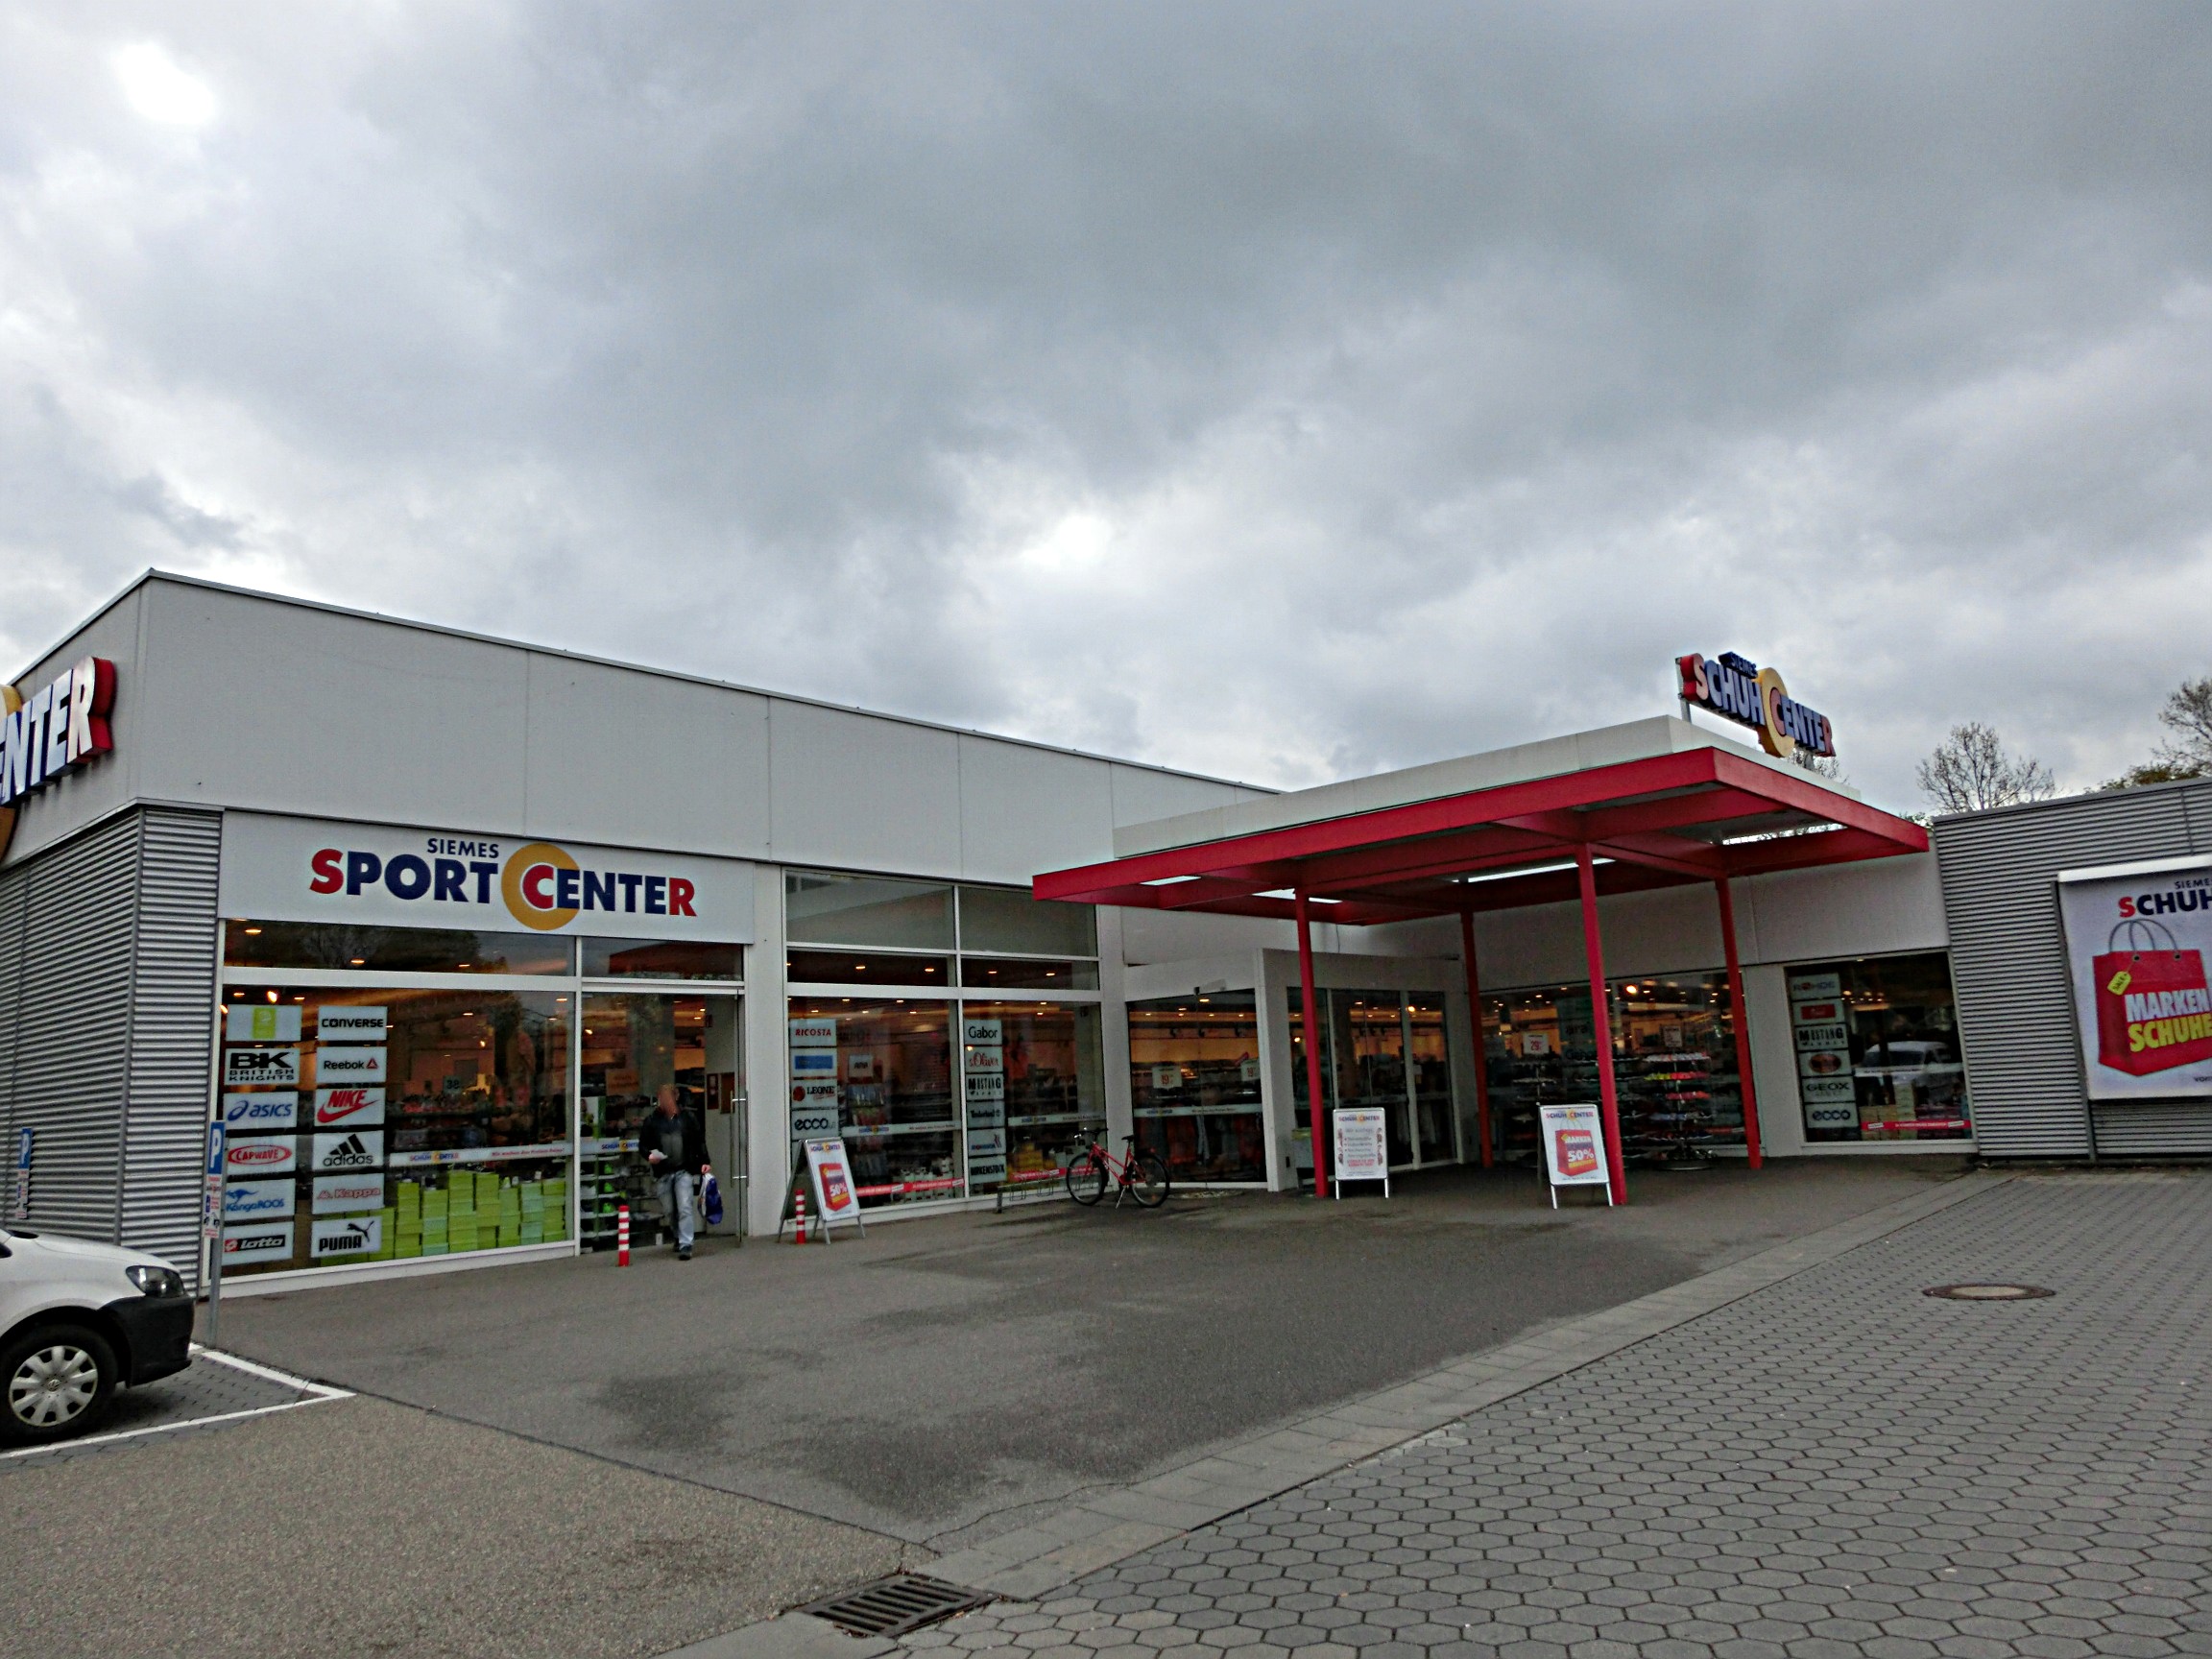 In der Mitte der Haupteingang, links der Eingang zum getrennten Laden für Sportschuhe